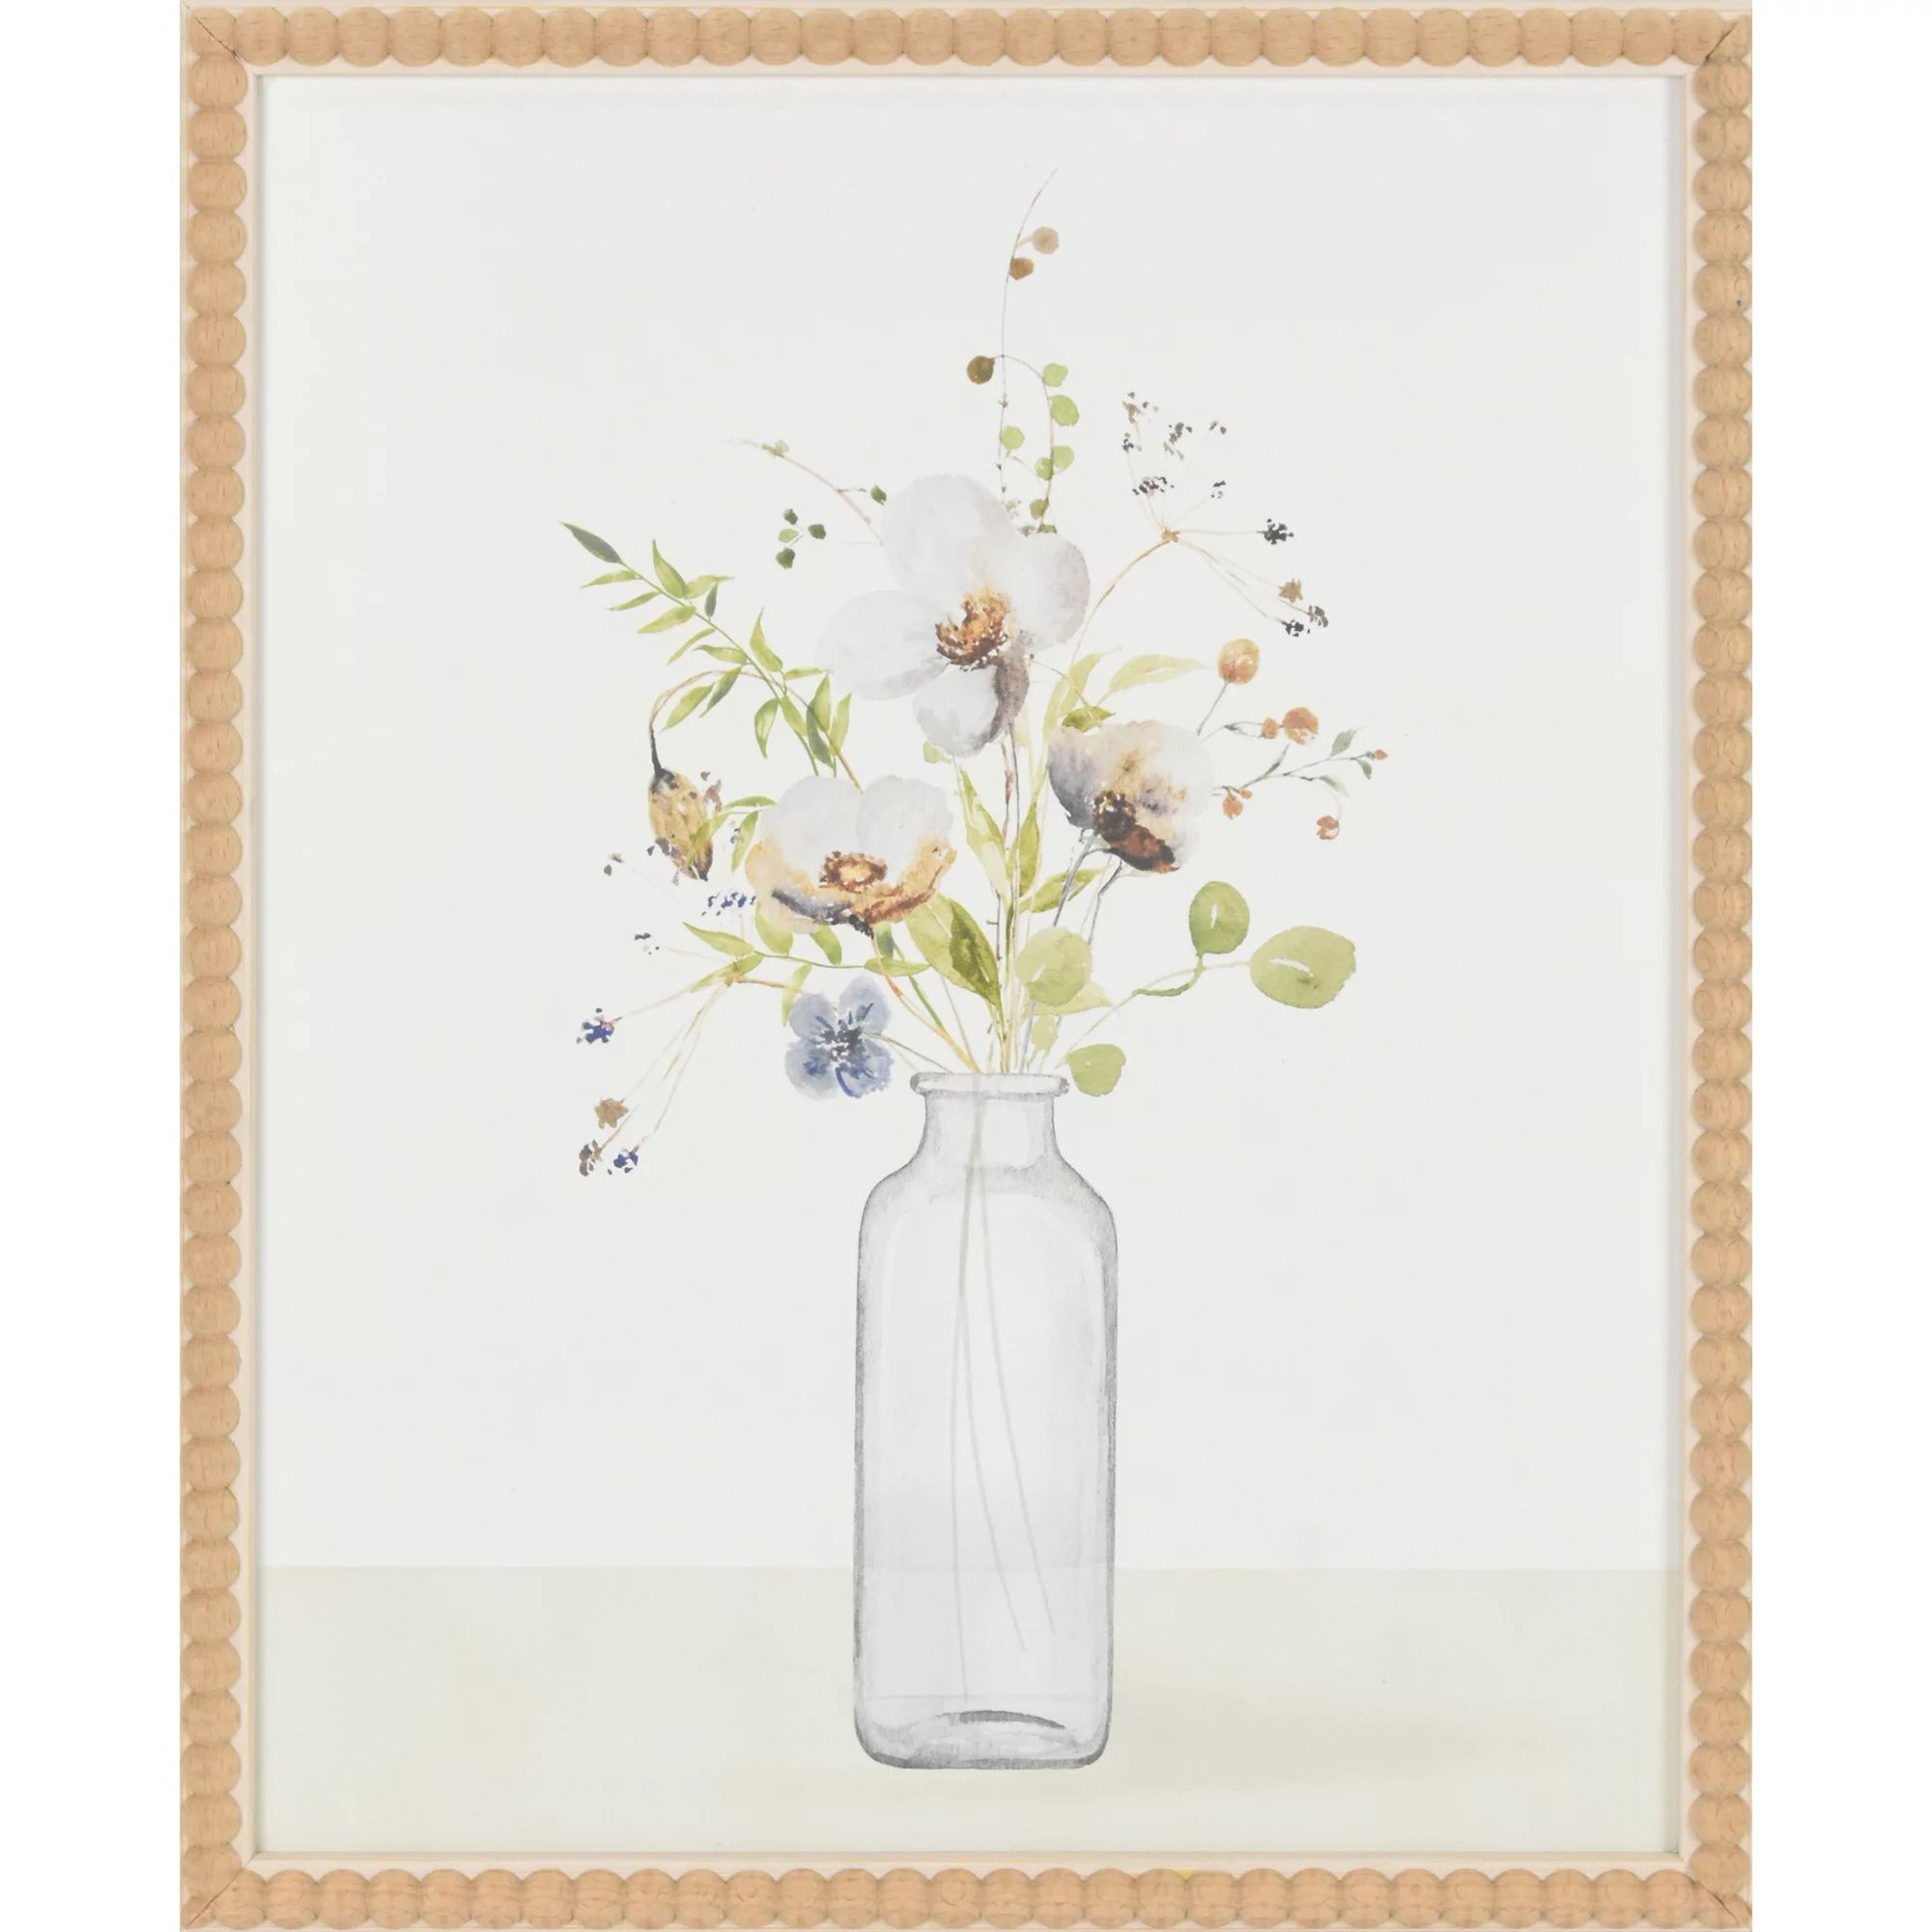 Crystal Art Gallery Beautiful Wildflower in Vase Art, 13x16 | Walmart (US)